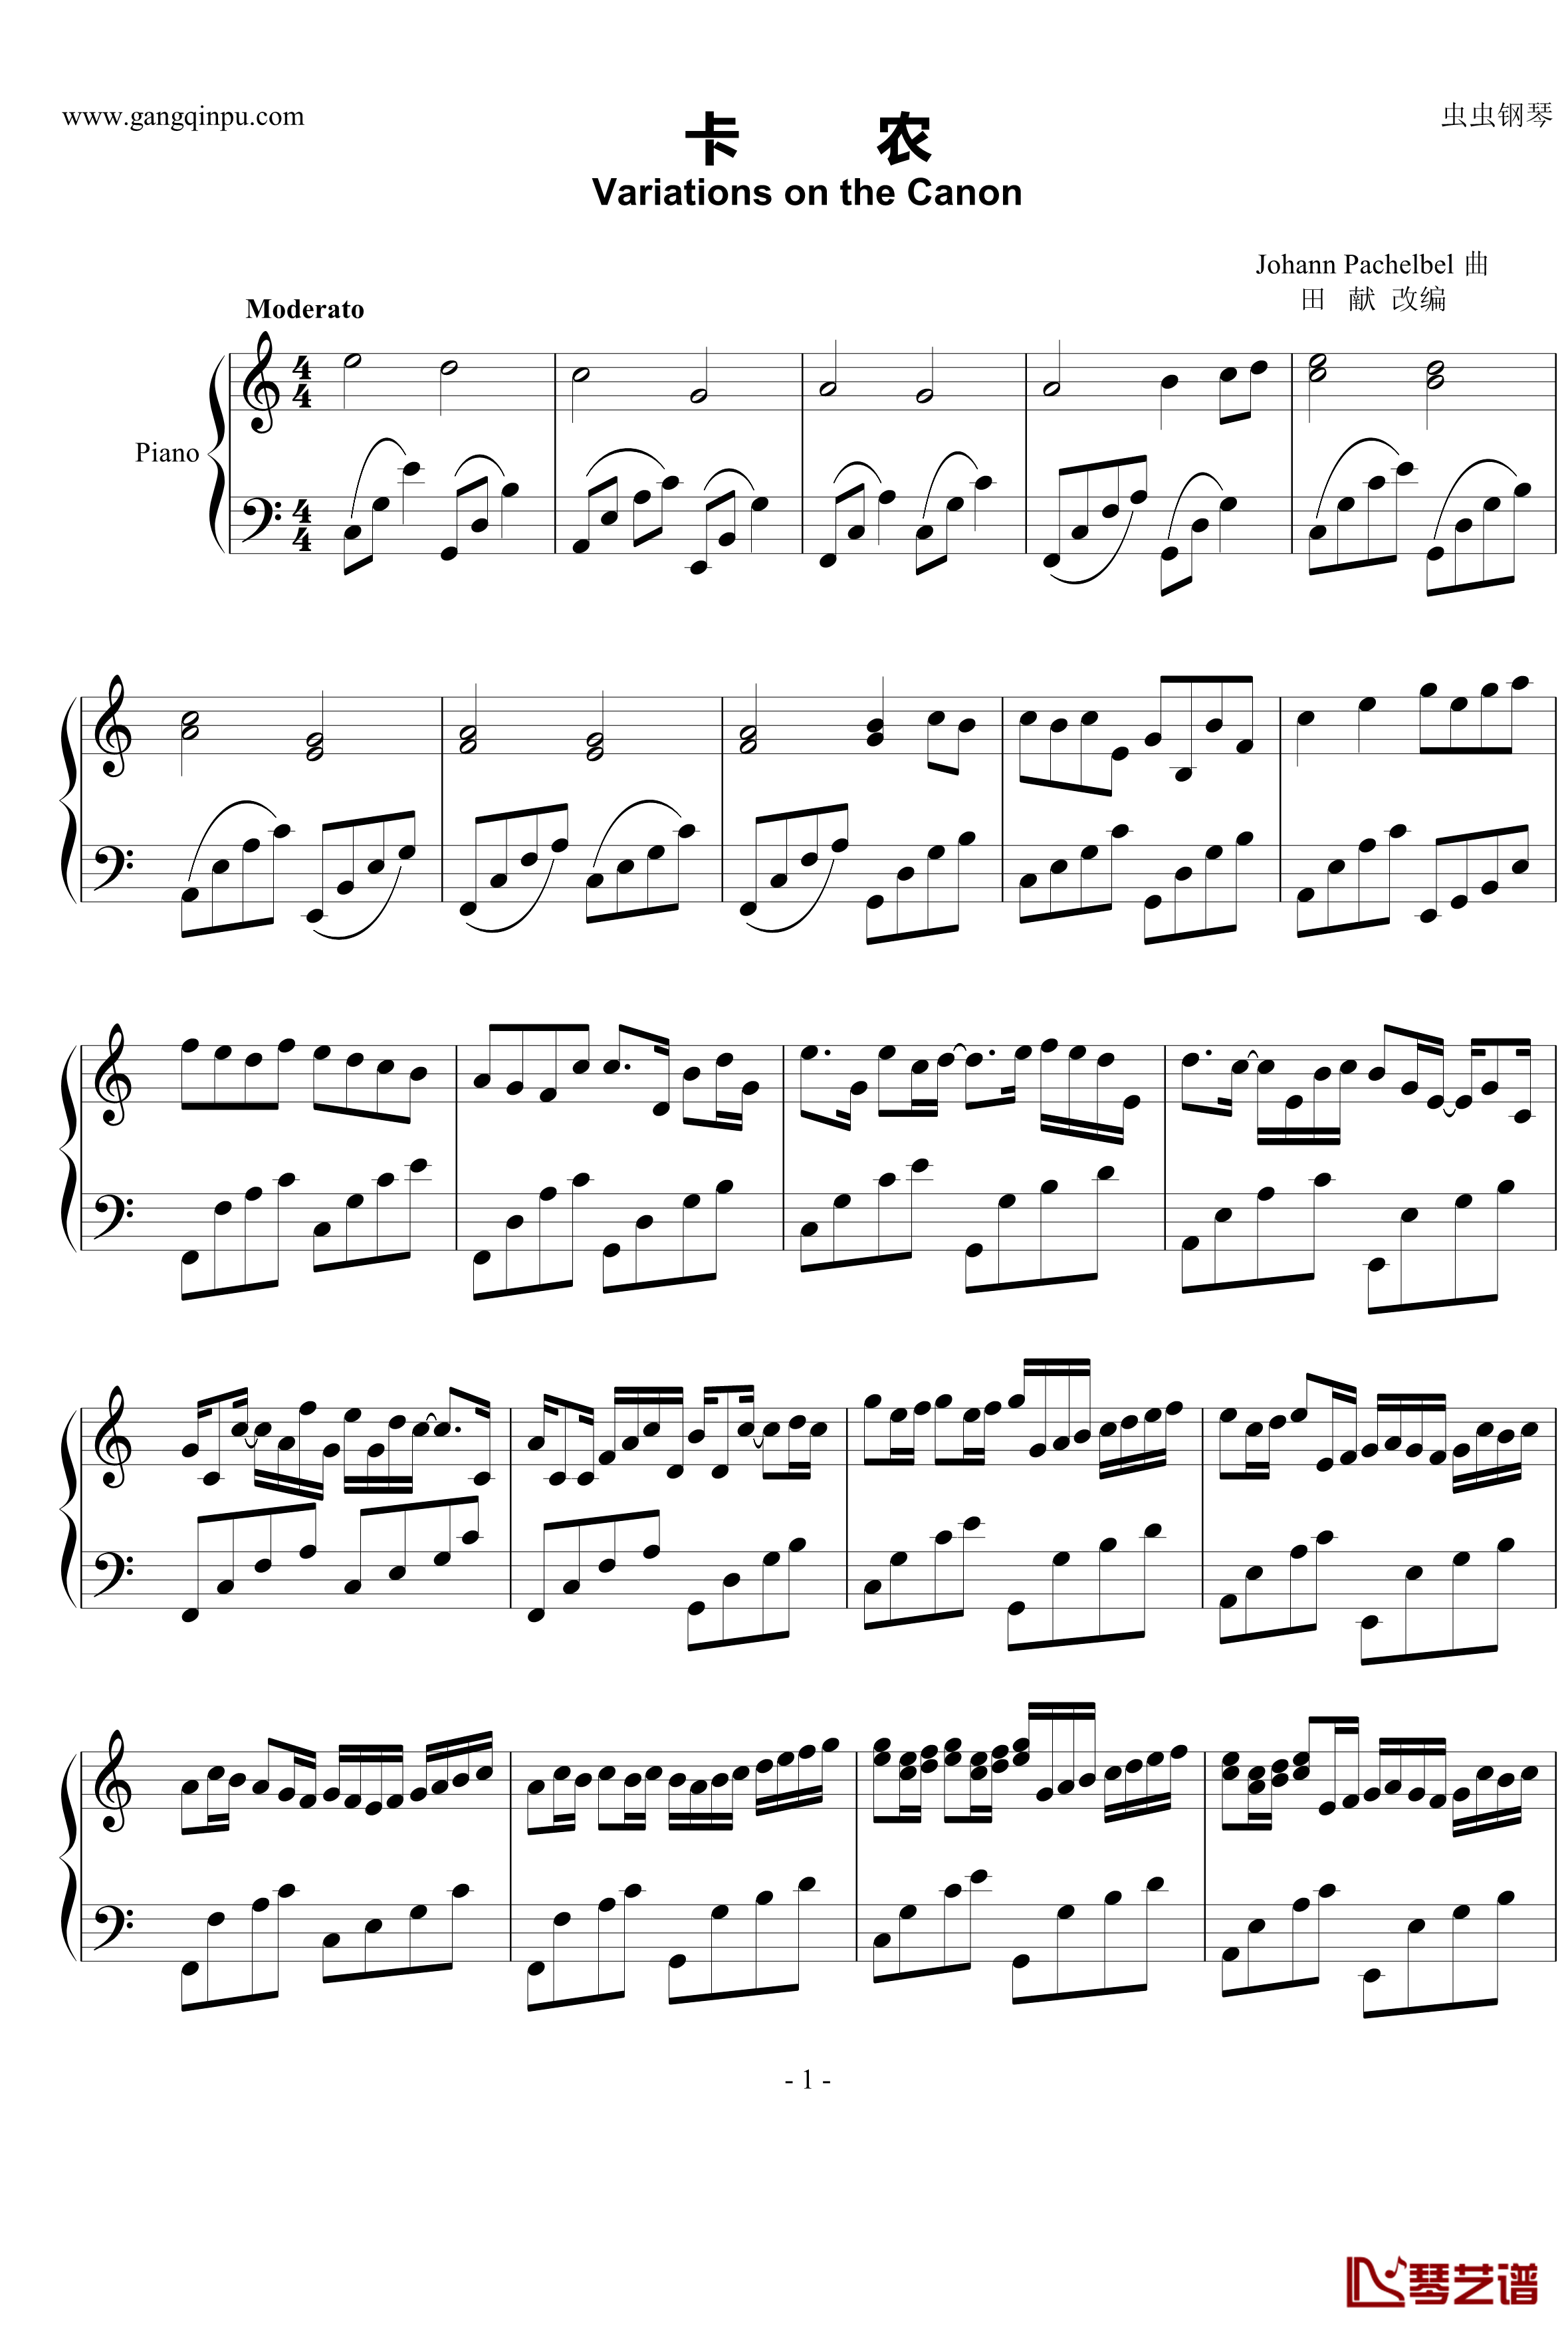 卡农钢琴谱-简化版-George Winston1